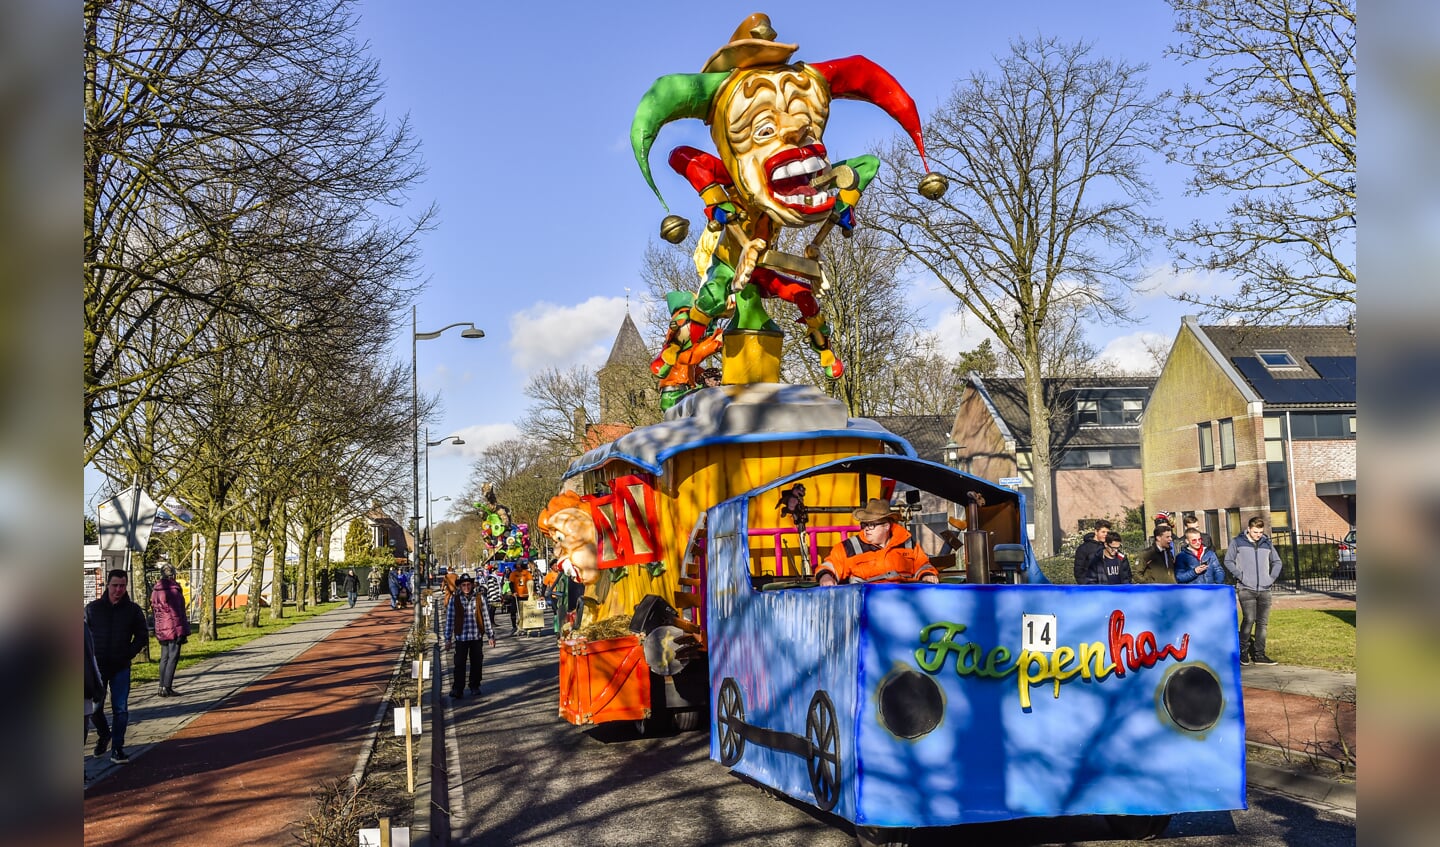 Bosschenhoofd - 10-02-2018 - Foto: peter Braakmann - Carnavals optocht in Bosschenhoofd was een groot succes.